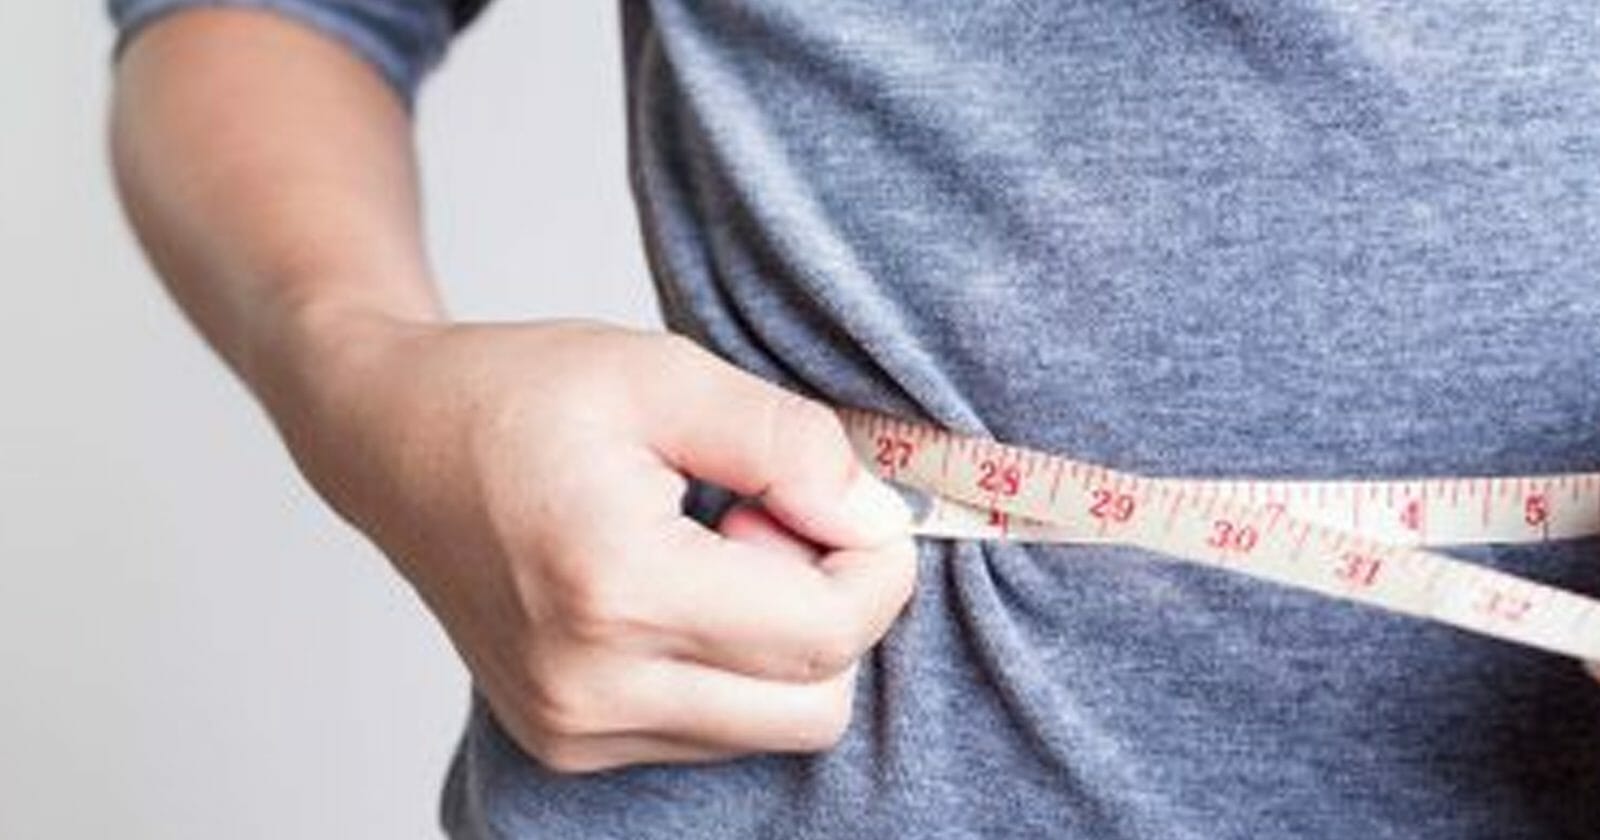 زيادة الوزن تؤدي إلى مشاكل صحيّة